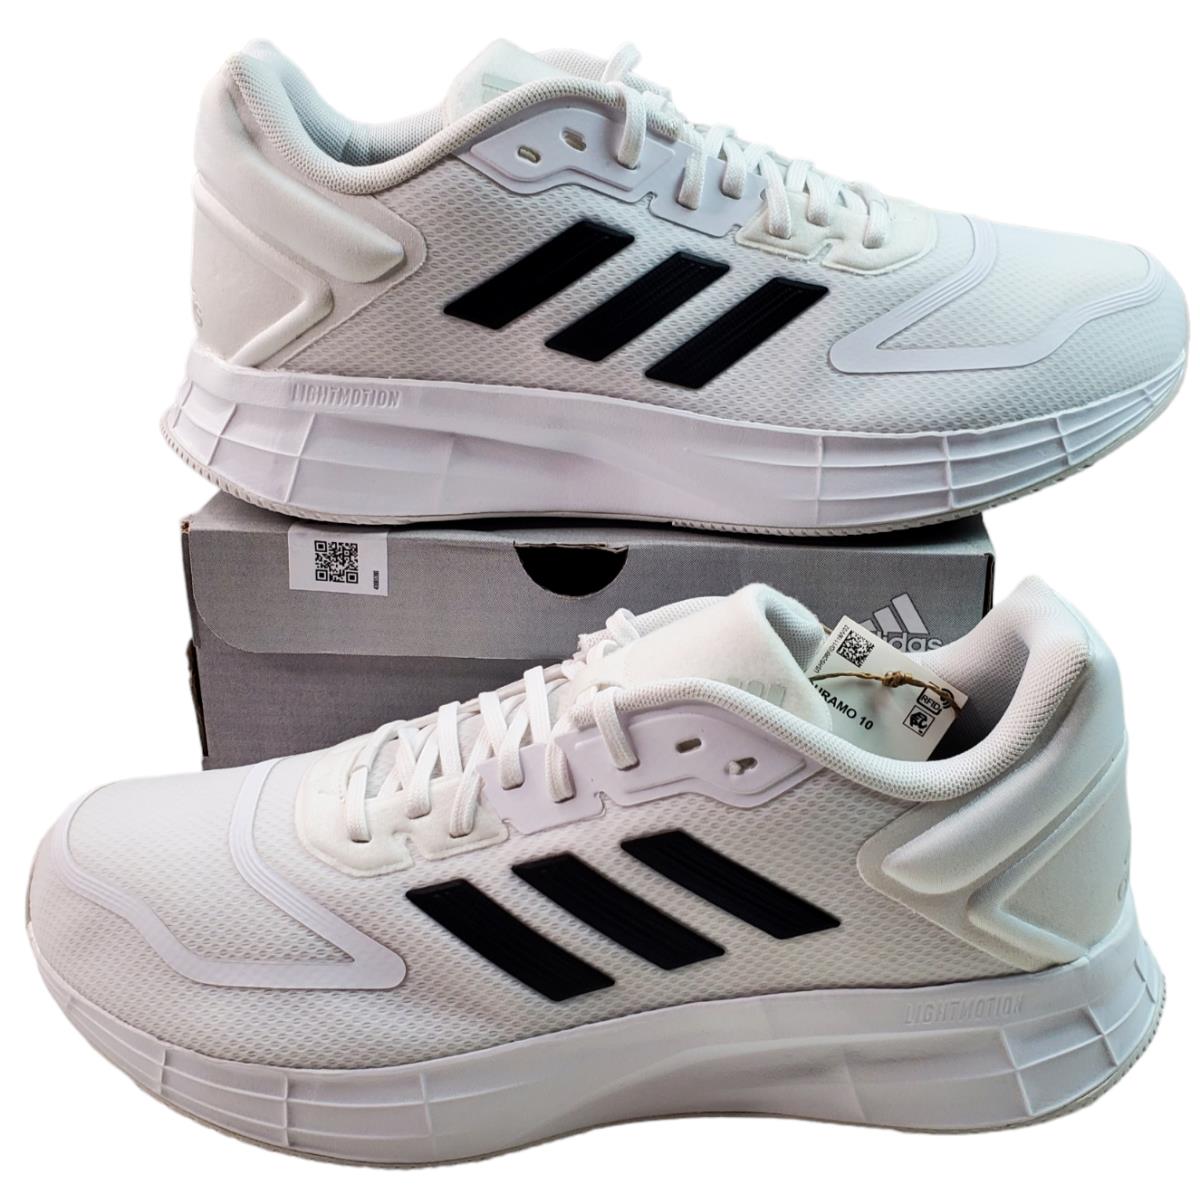 Adidas shoes Duramo - Multicolor 0